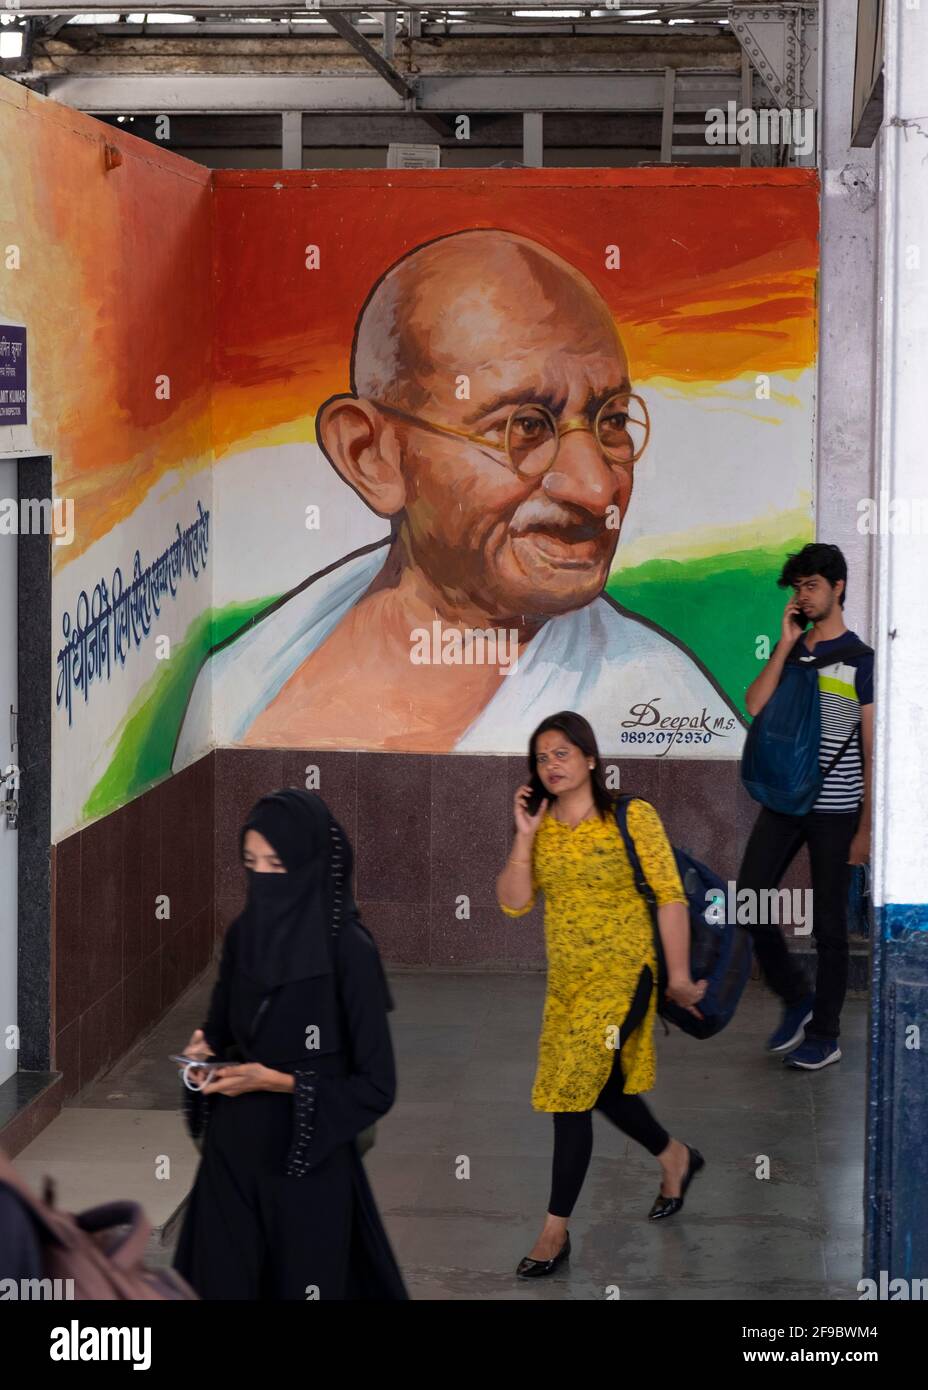 Commuter marchant au-delà d'une image de Mahatma Gandhi à l'intérieur de la gare de Dadar à Mumbai, Maharashtra, Inde, Asie. Banque D'Images